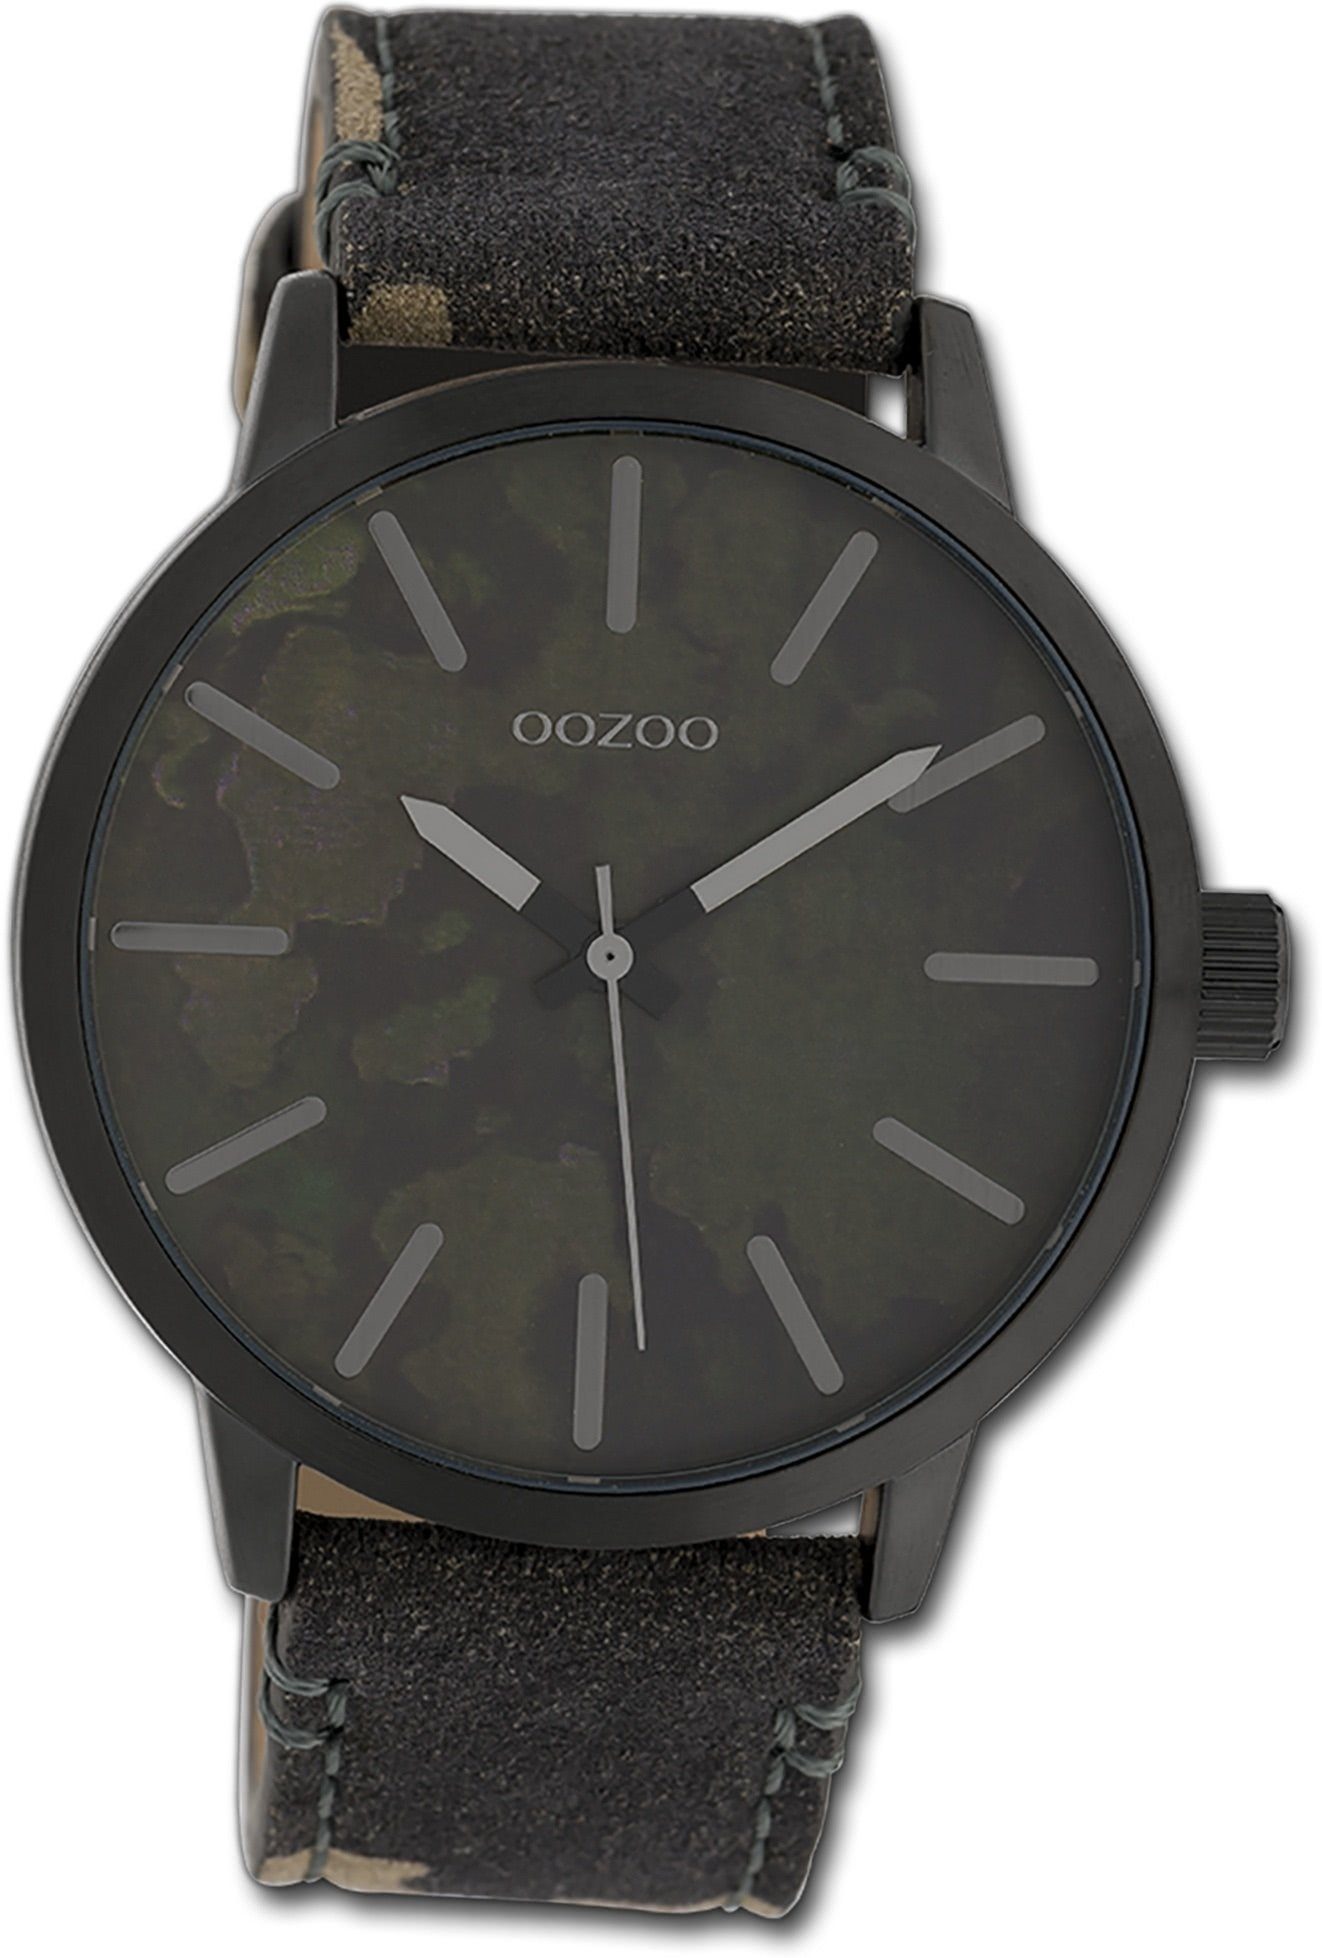 OOZOO Quarzuhr Oozoo Unisex Armbanduhr Timepieces, Damen, Herrenuhr Textilarmband schwarz, braun, rundes Gehäuse, 45mm